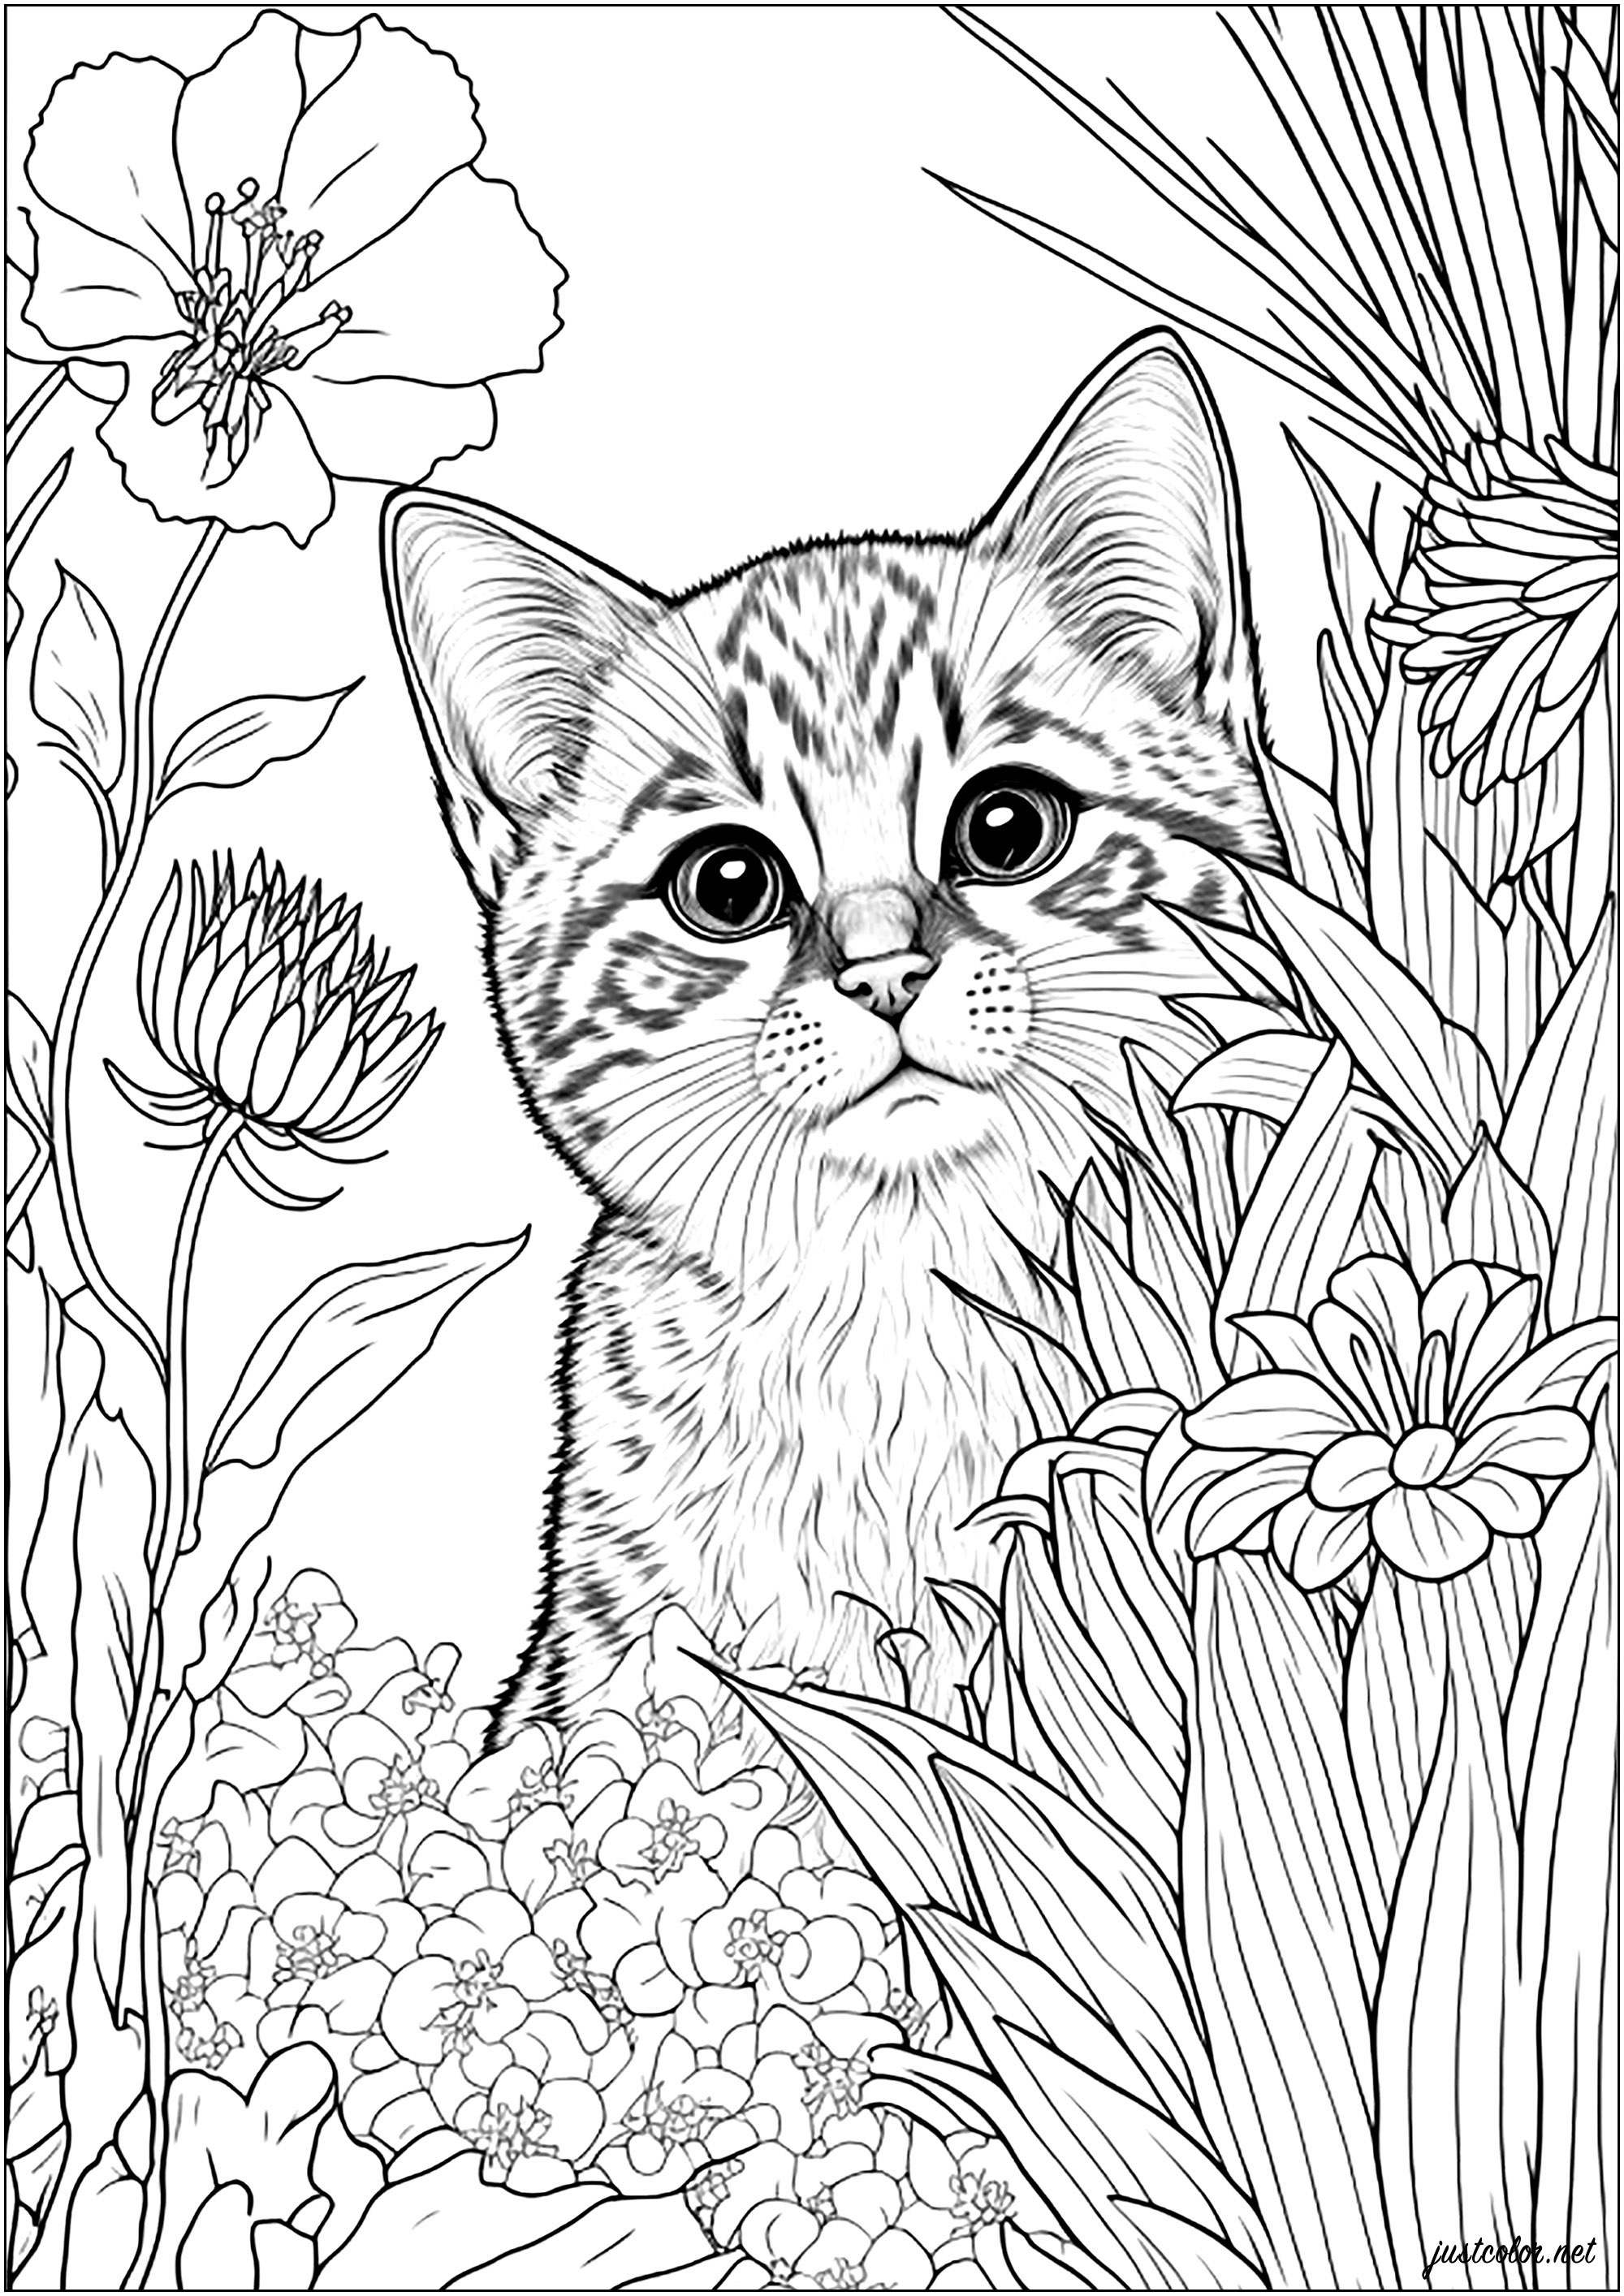 Lindo gato detrás de las flores   - 1 - Esta imagen contiene : Mascota